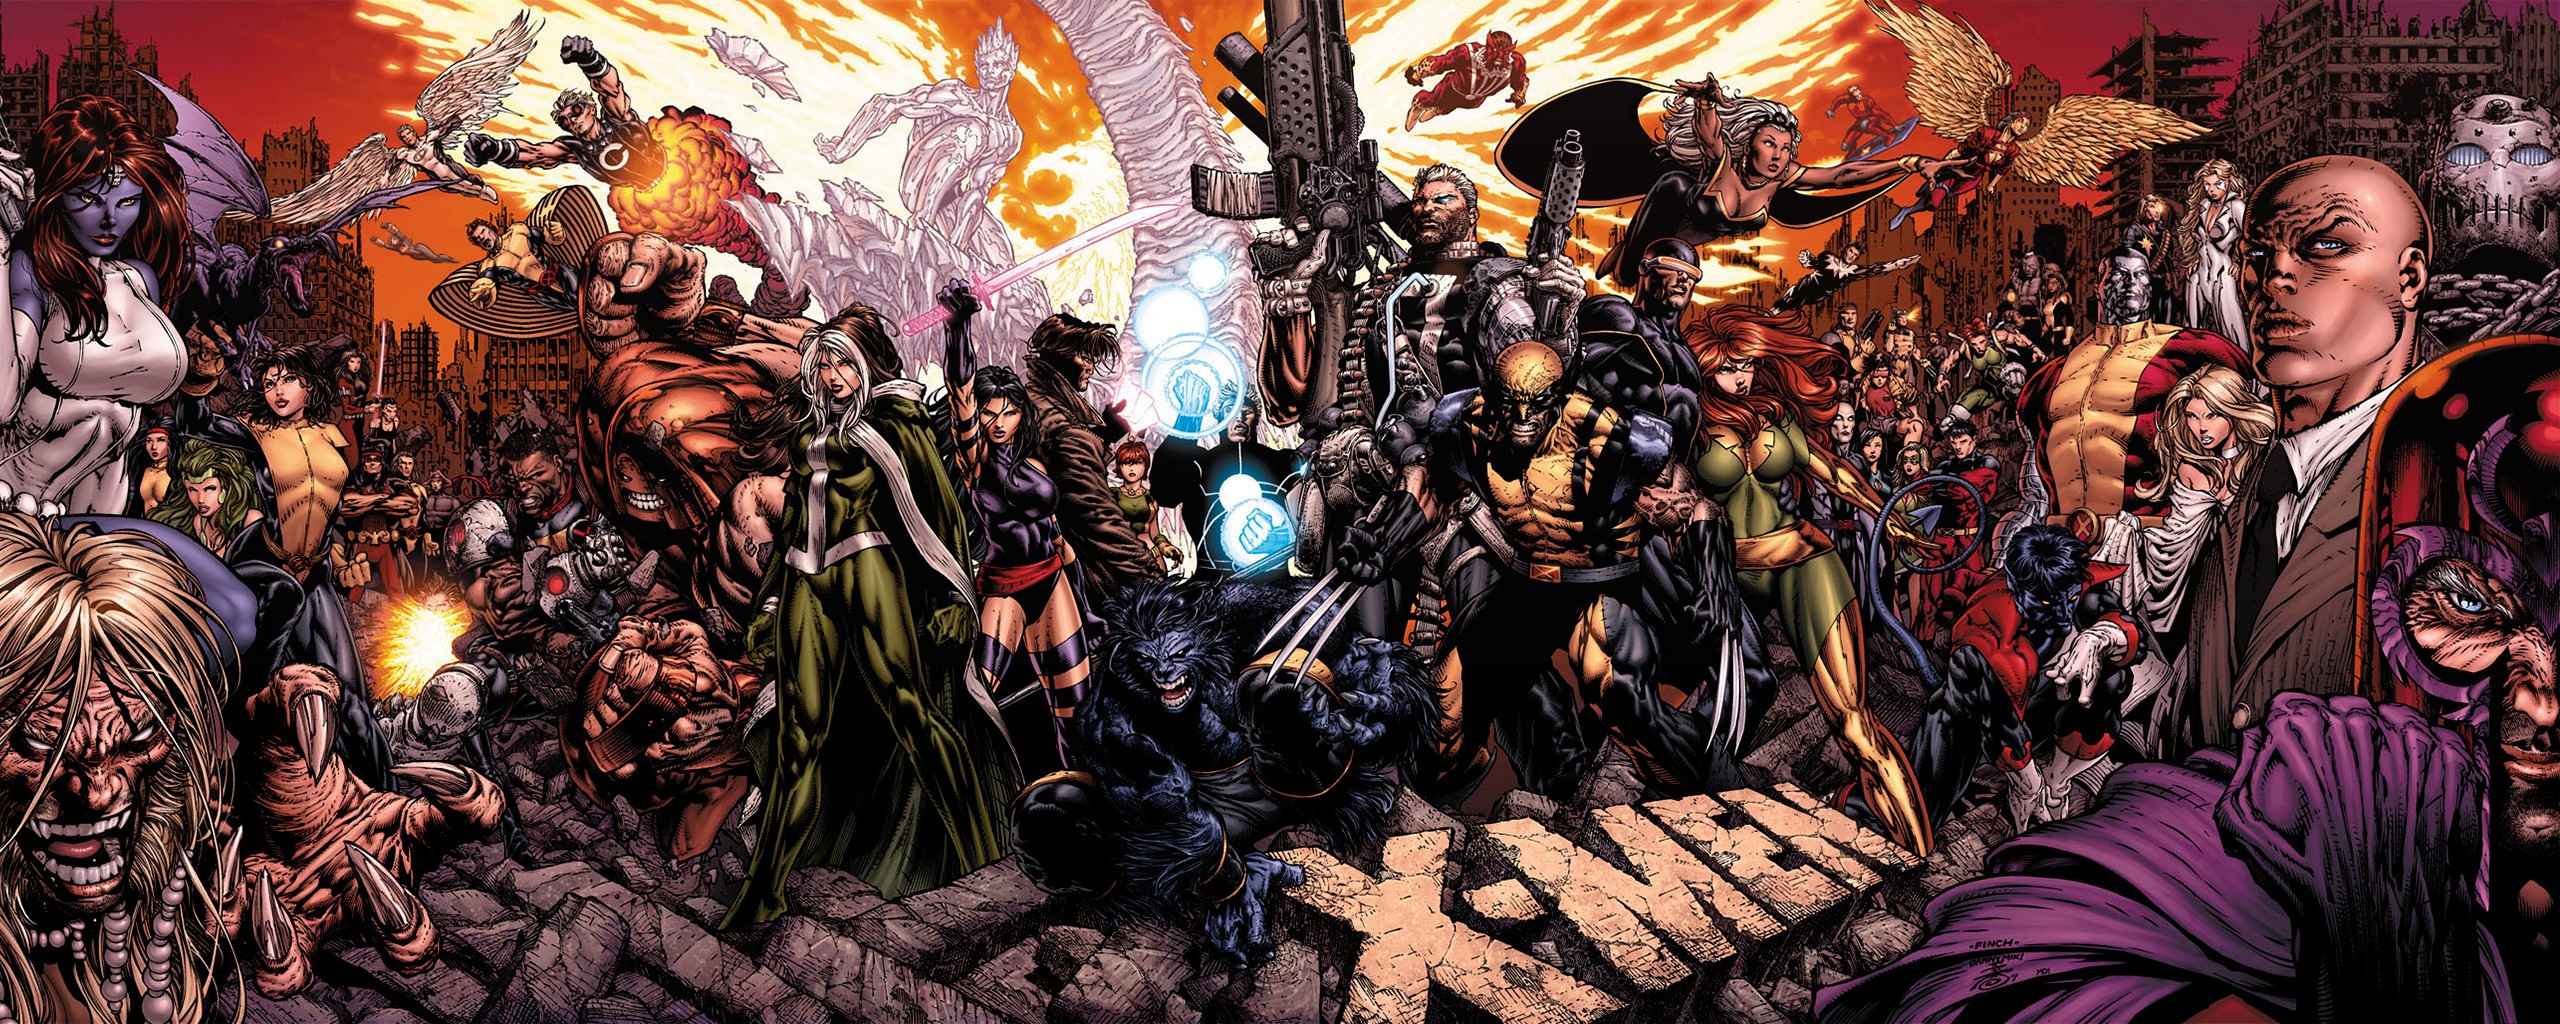 X Men, Comics, Comic Books, Marvel Comics Wallpapers HD / Desktop ...